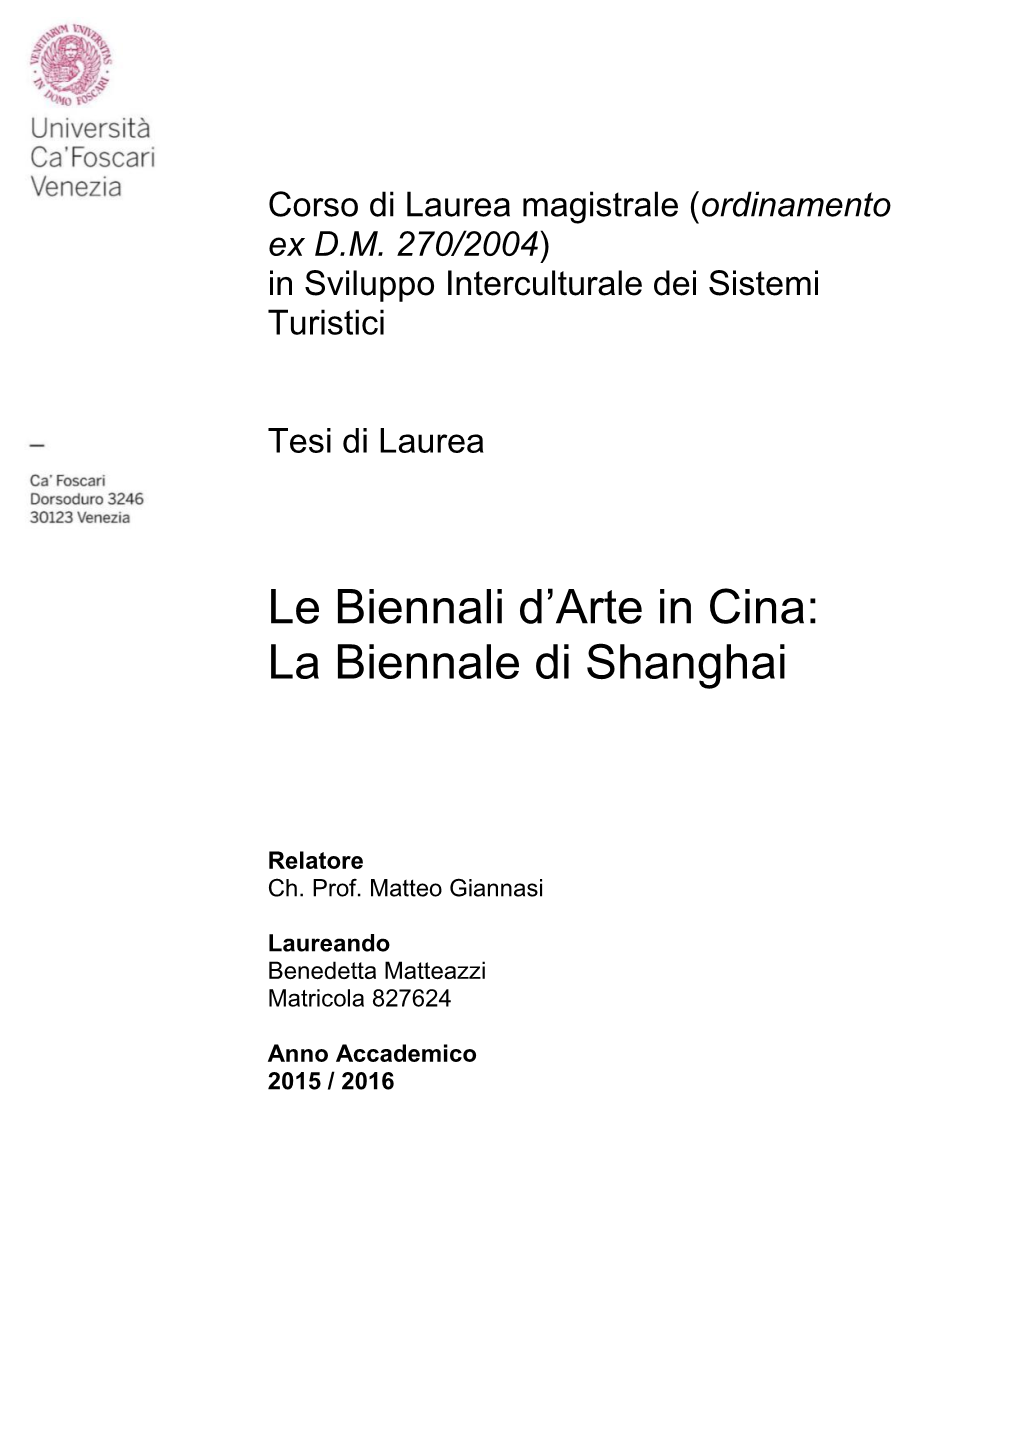 Le Biennali D'arte in Cina: La Biennale Di Shanghai